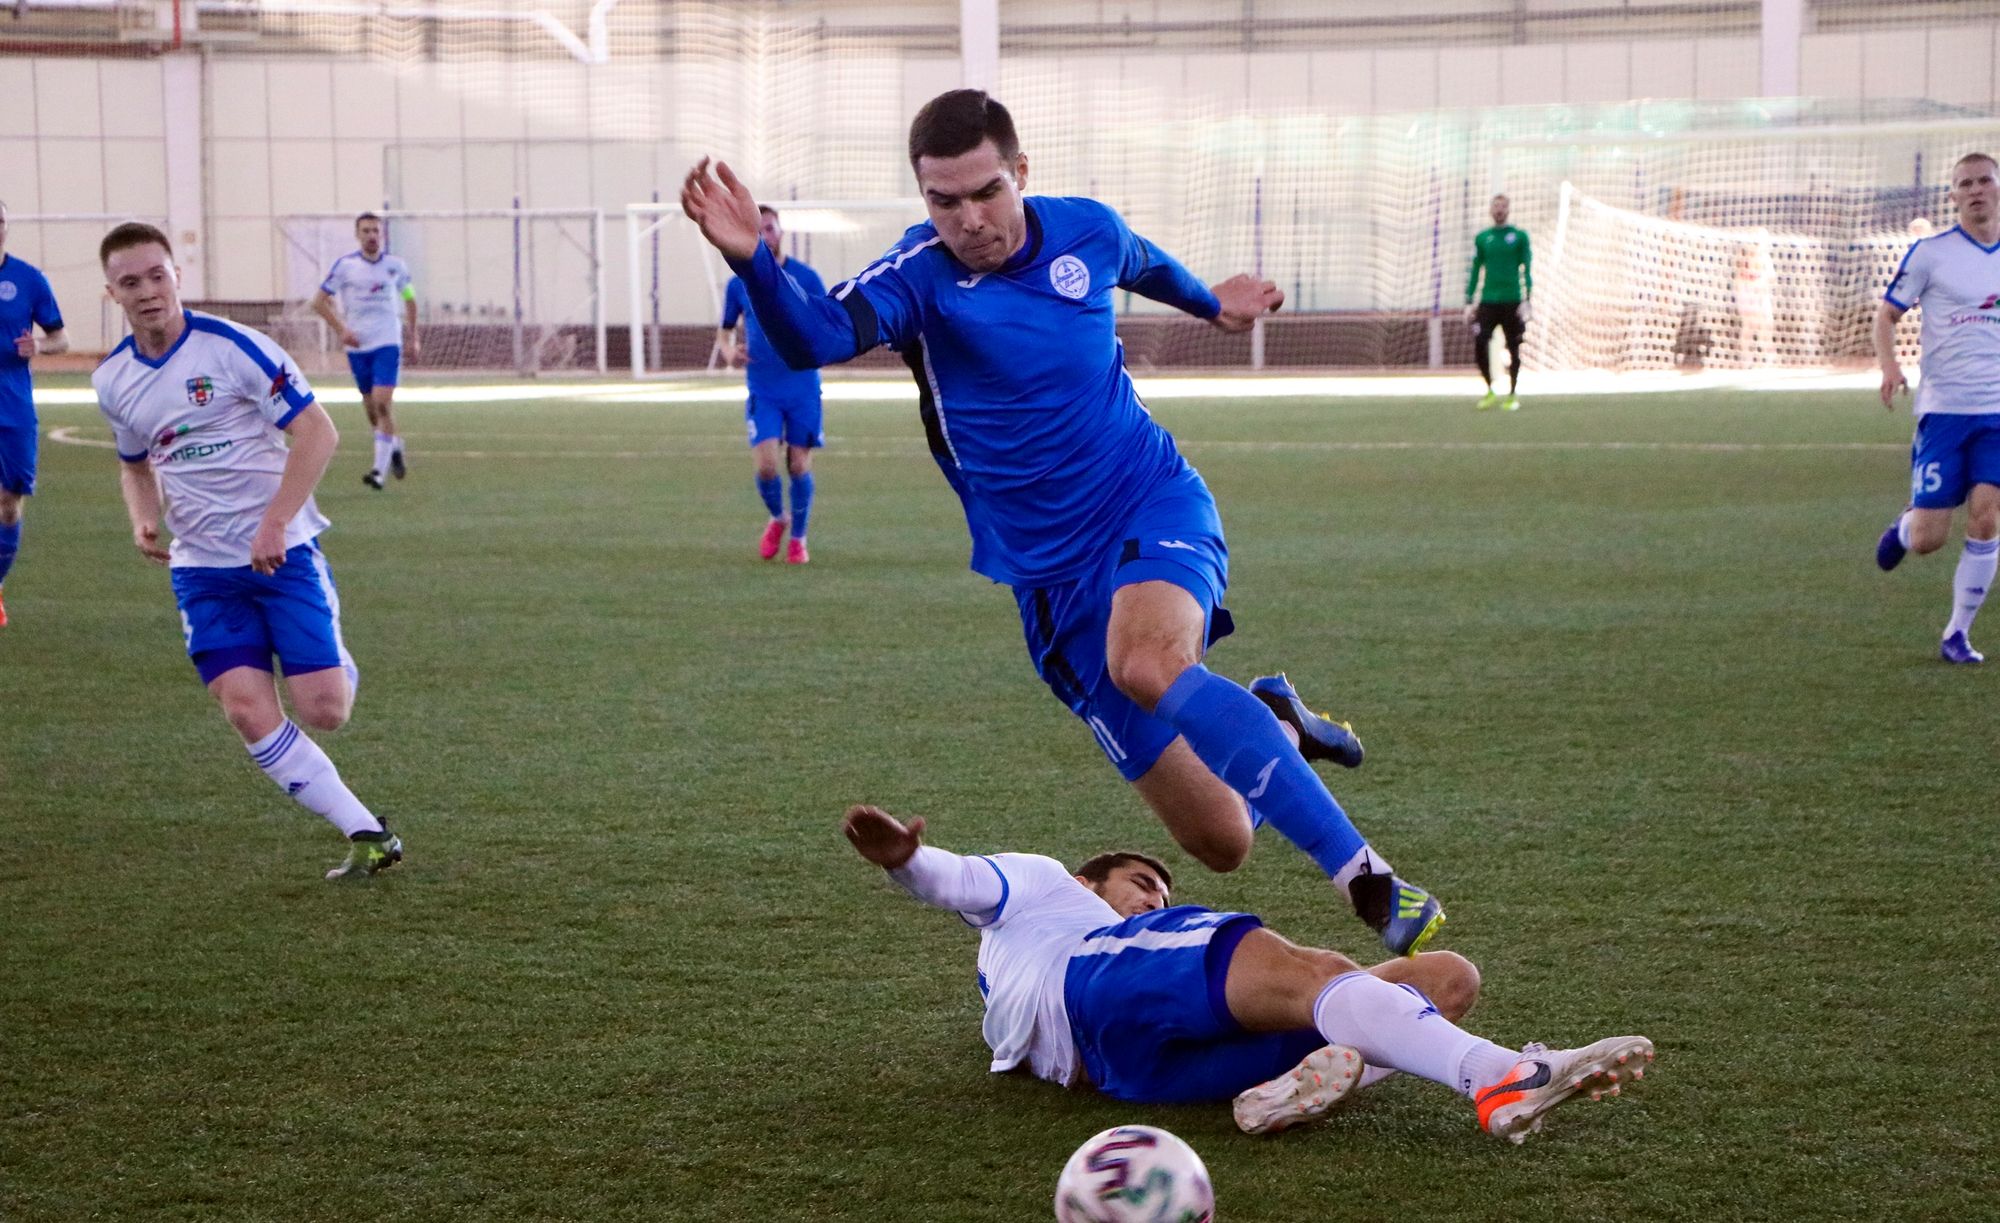 

Футбольная команда «Зенит-Ижевск» стала третьей на состязании клубов ПФО в Казани

